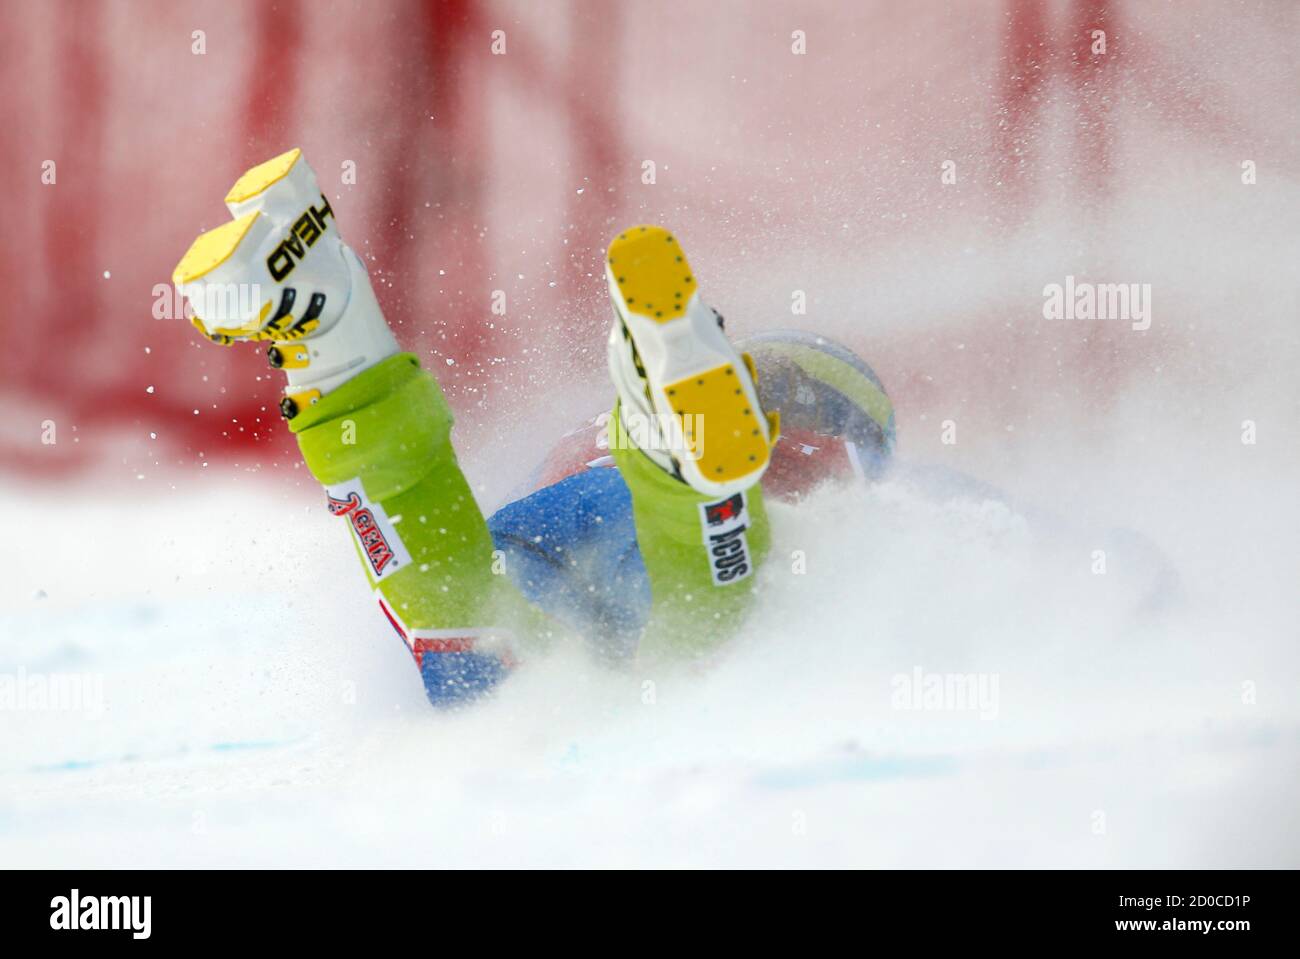 Marusa Ferk, de Slovénie, s'écrase lors de l'entraînement de ski alpin pour la coupe du monde féminine de descente à Lake Louise, en Alberta, le 27 novembre 2012. REUTERS/Mike Blake (CANADA - Tags: SKI DE SPORT) Banque D'Images